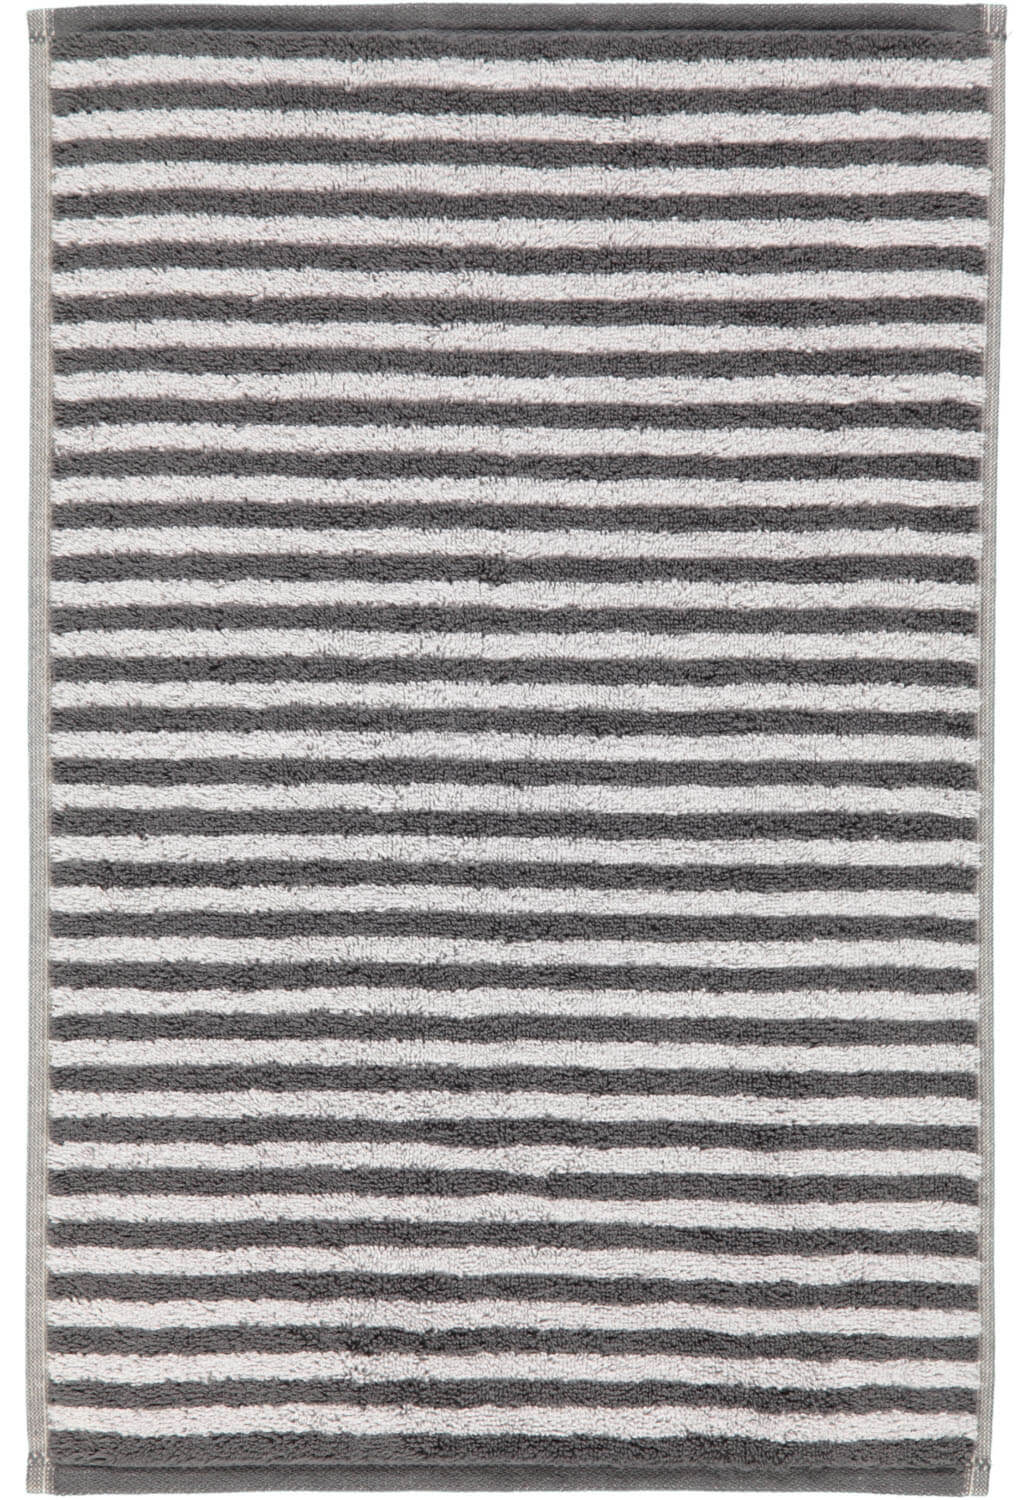 Полотенце премиум класса Campus Stripes (955-77)